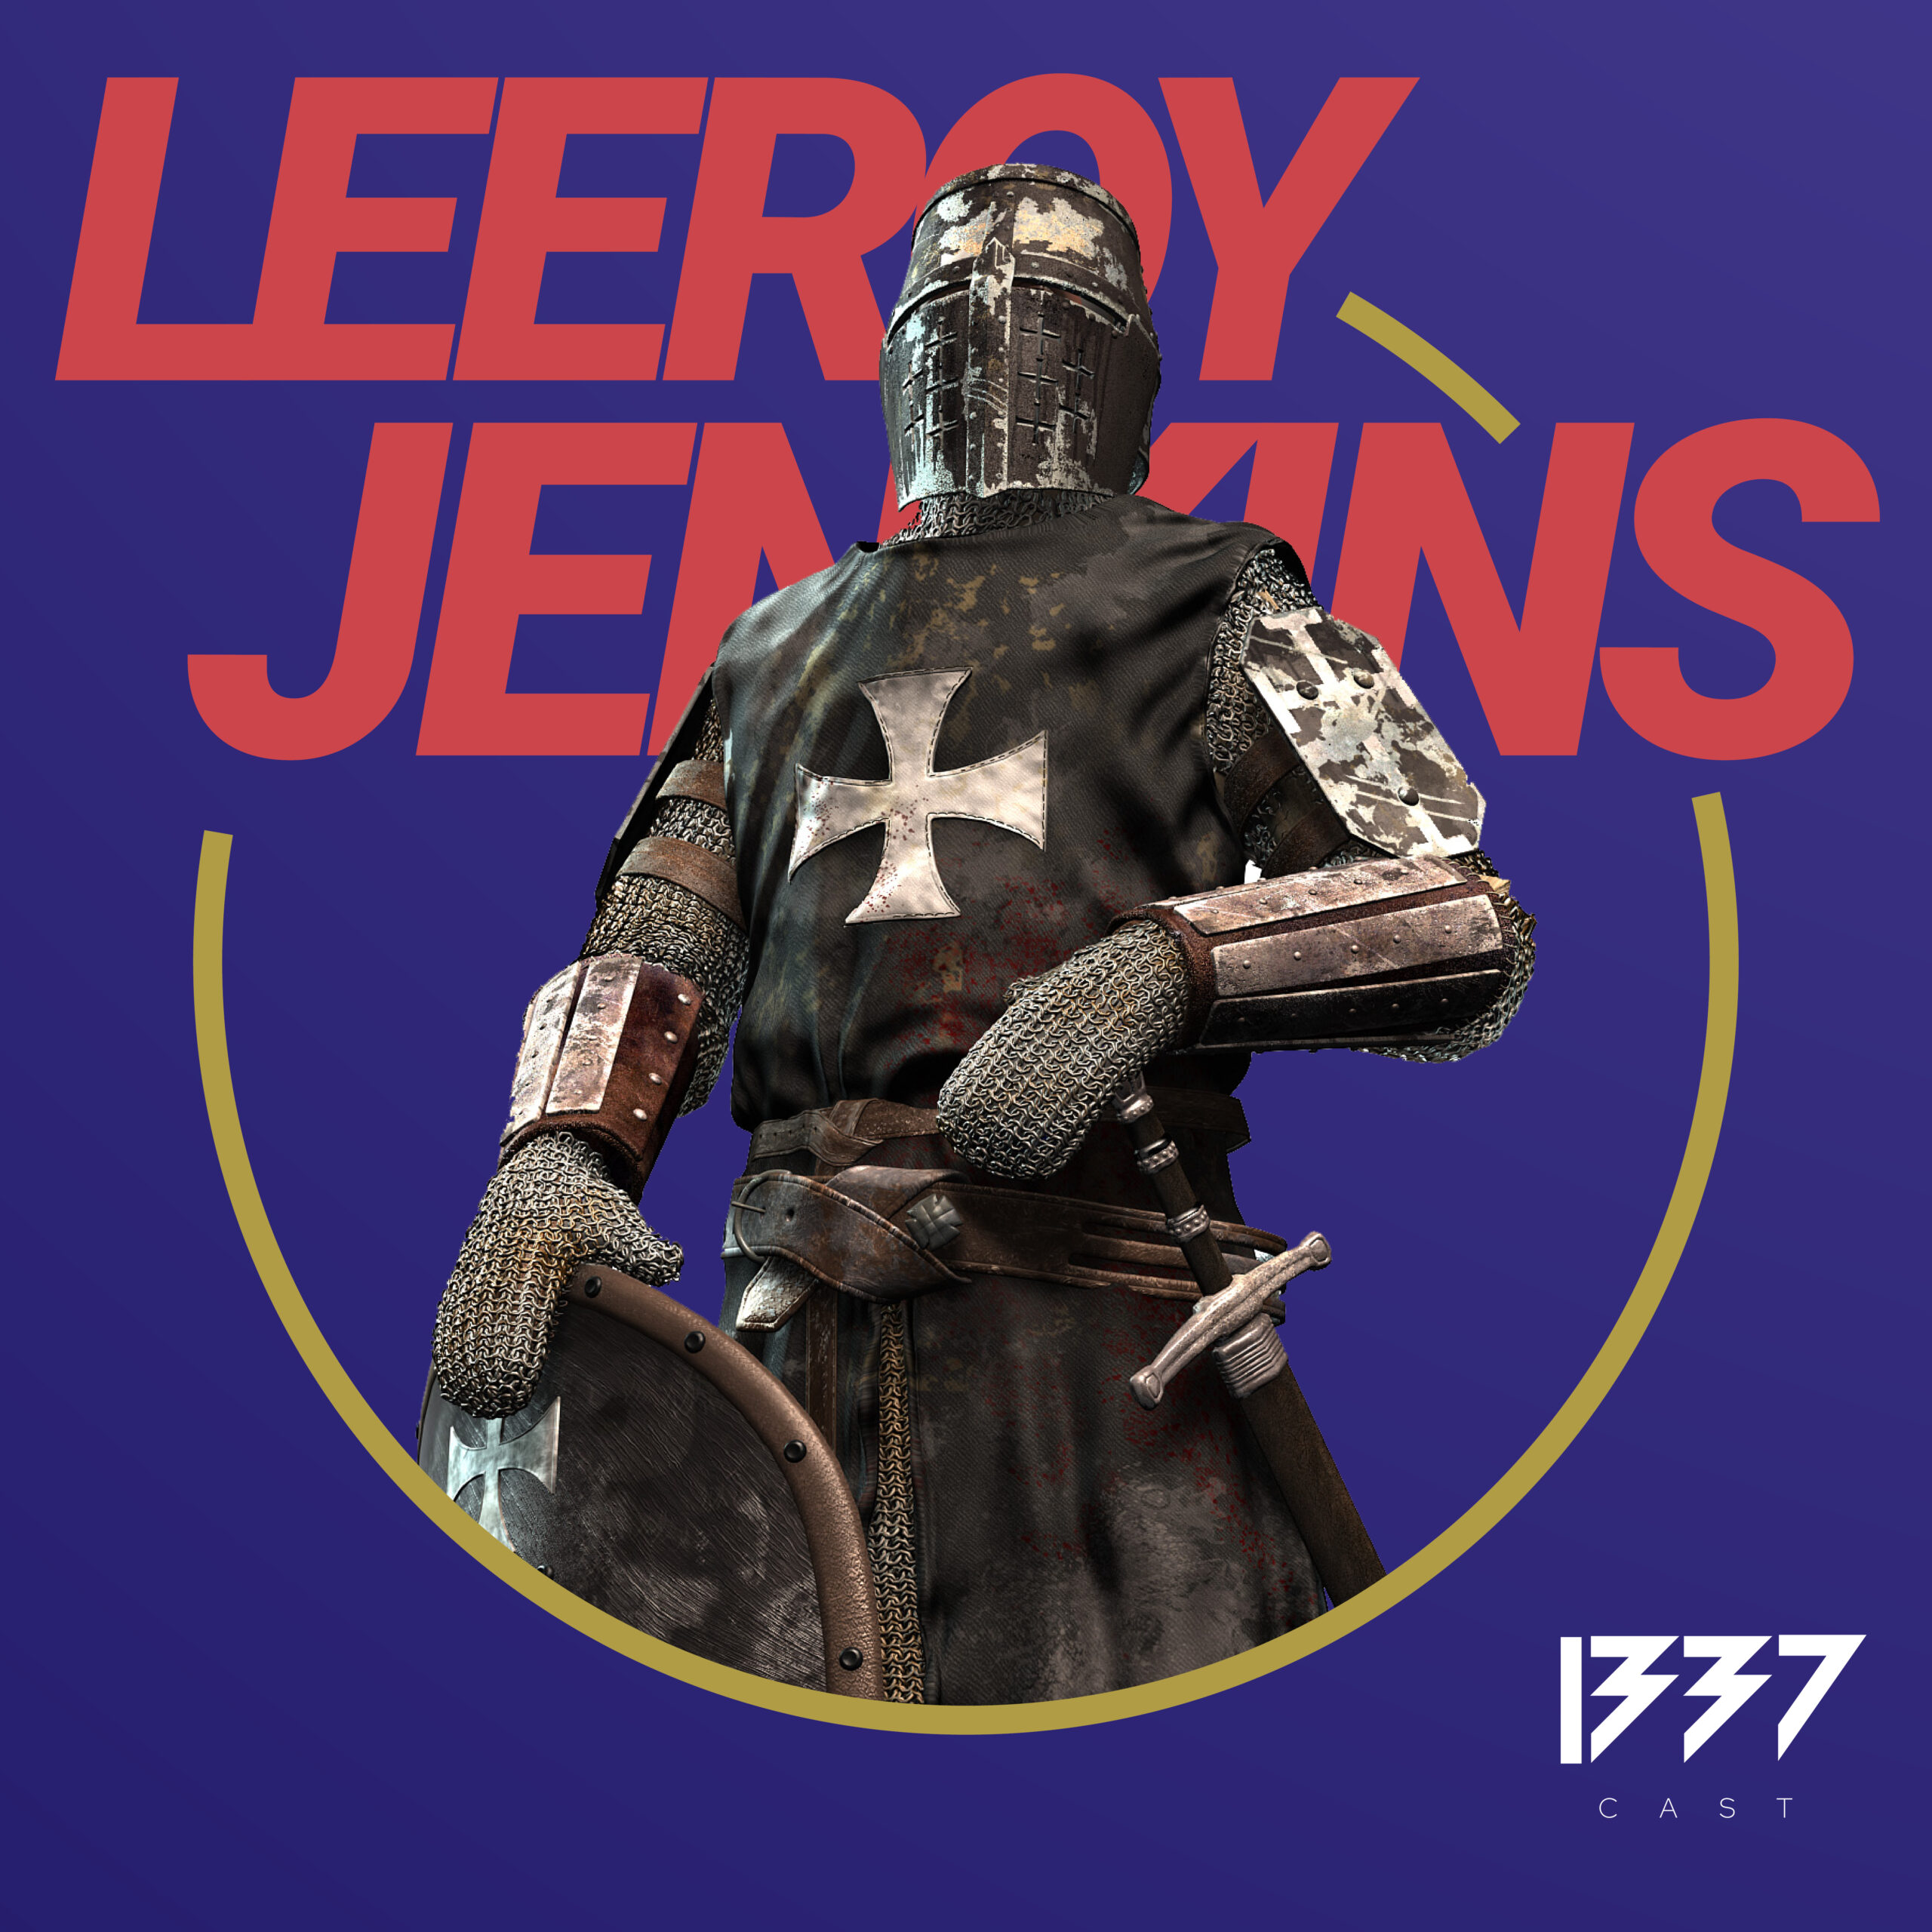 Die größte WOW-Legende – Leeroy Jenkins